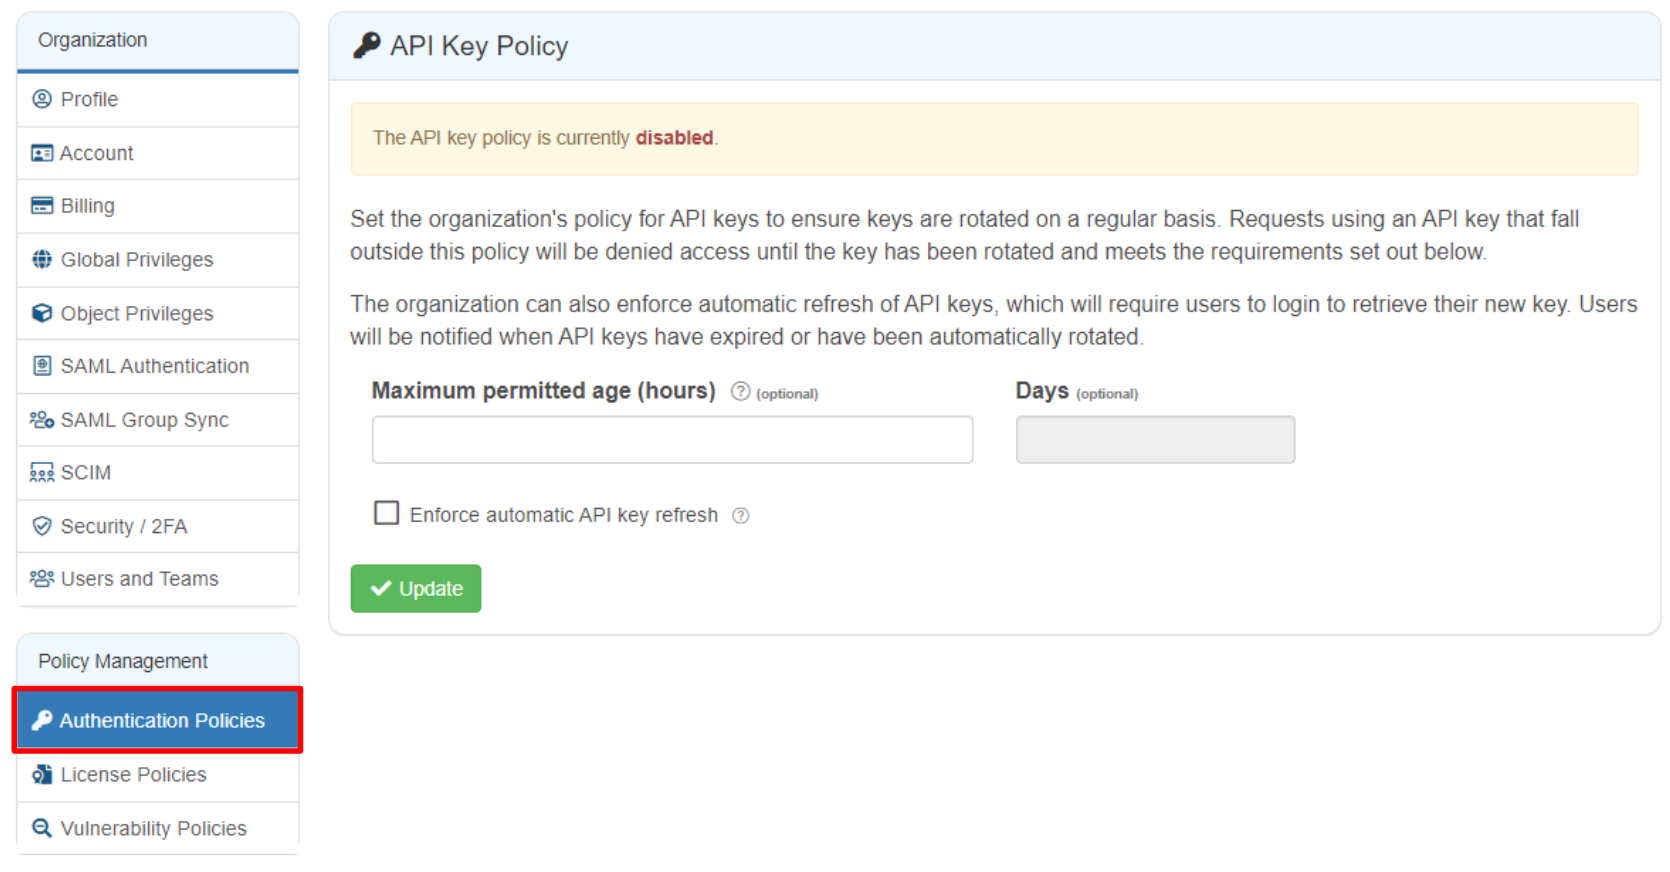 API Key Policy

